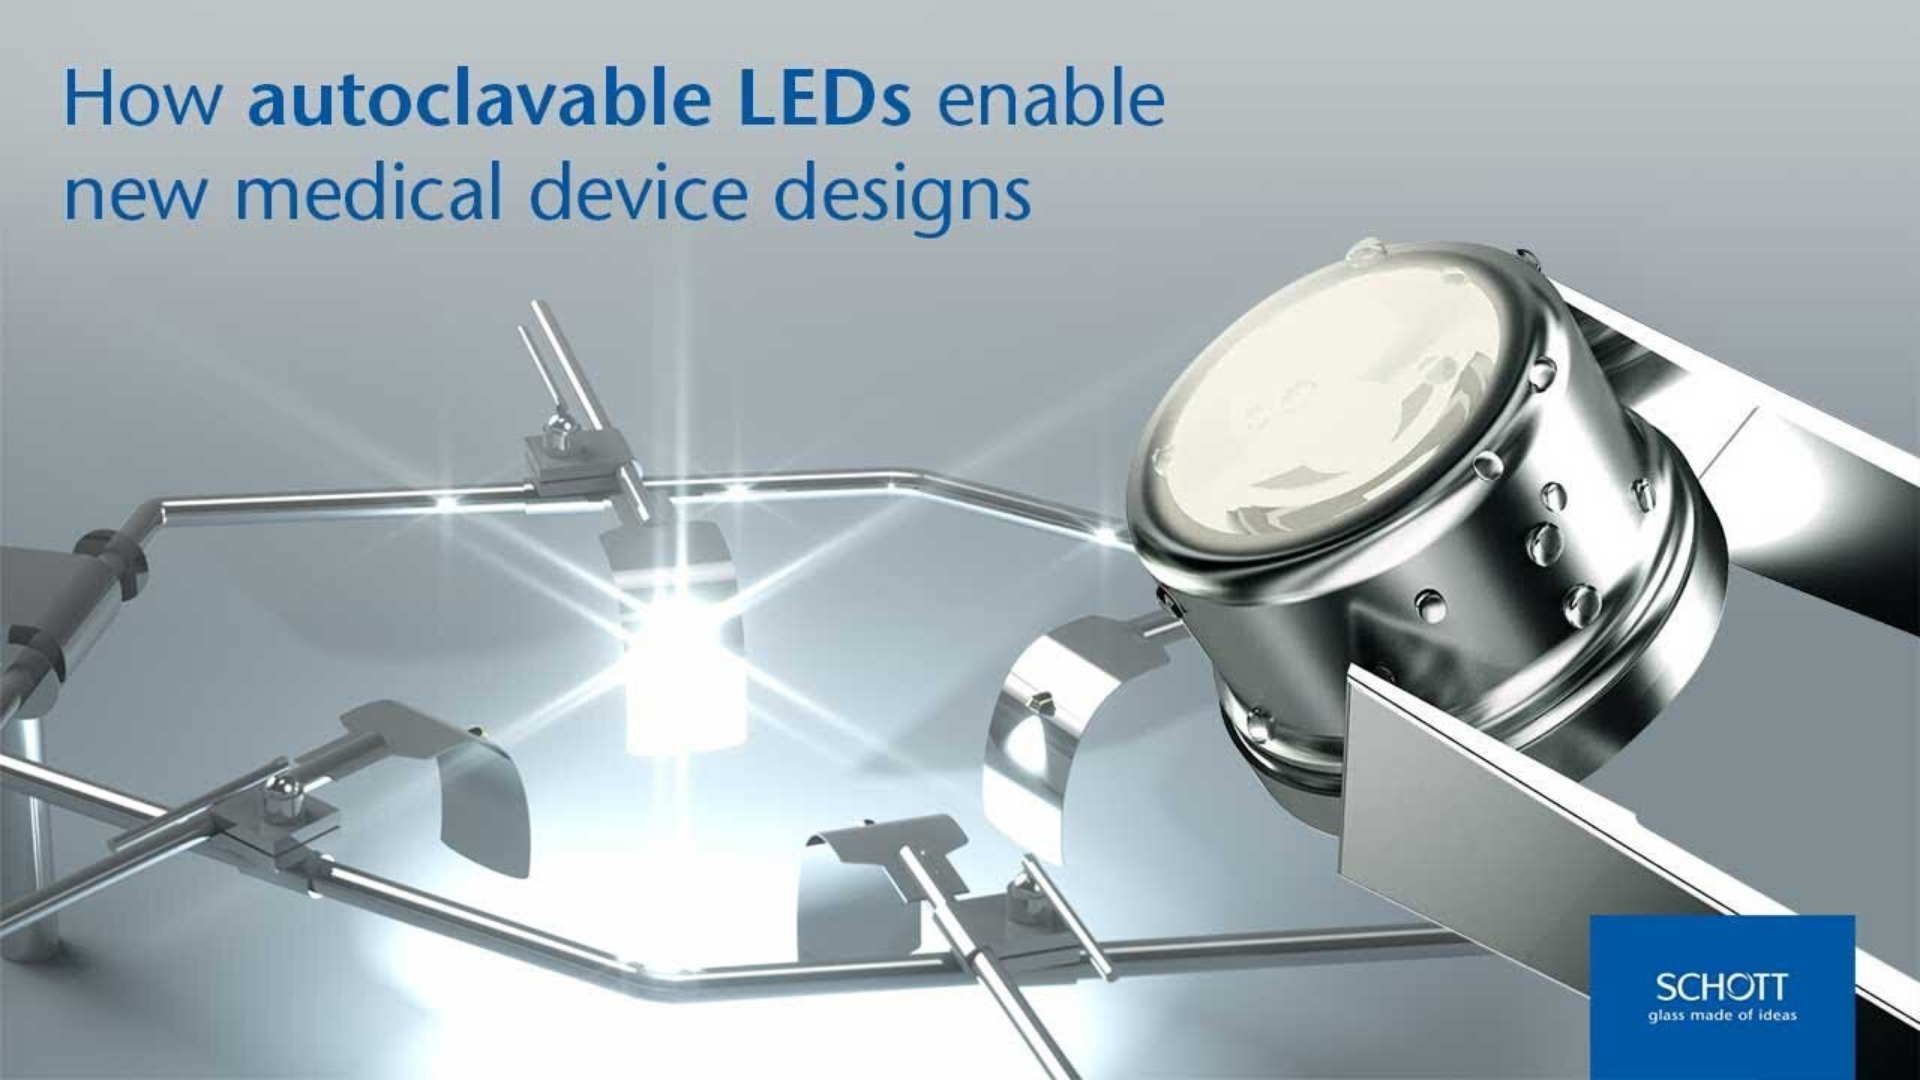 Haga clic para conocer cómo los LED Solidur® de SCHOTT esterilizables en autoclave permiten la creación de nuevos diseños de dispositivos médicos